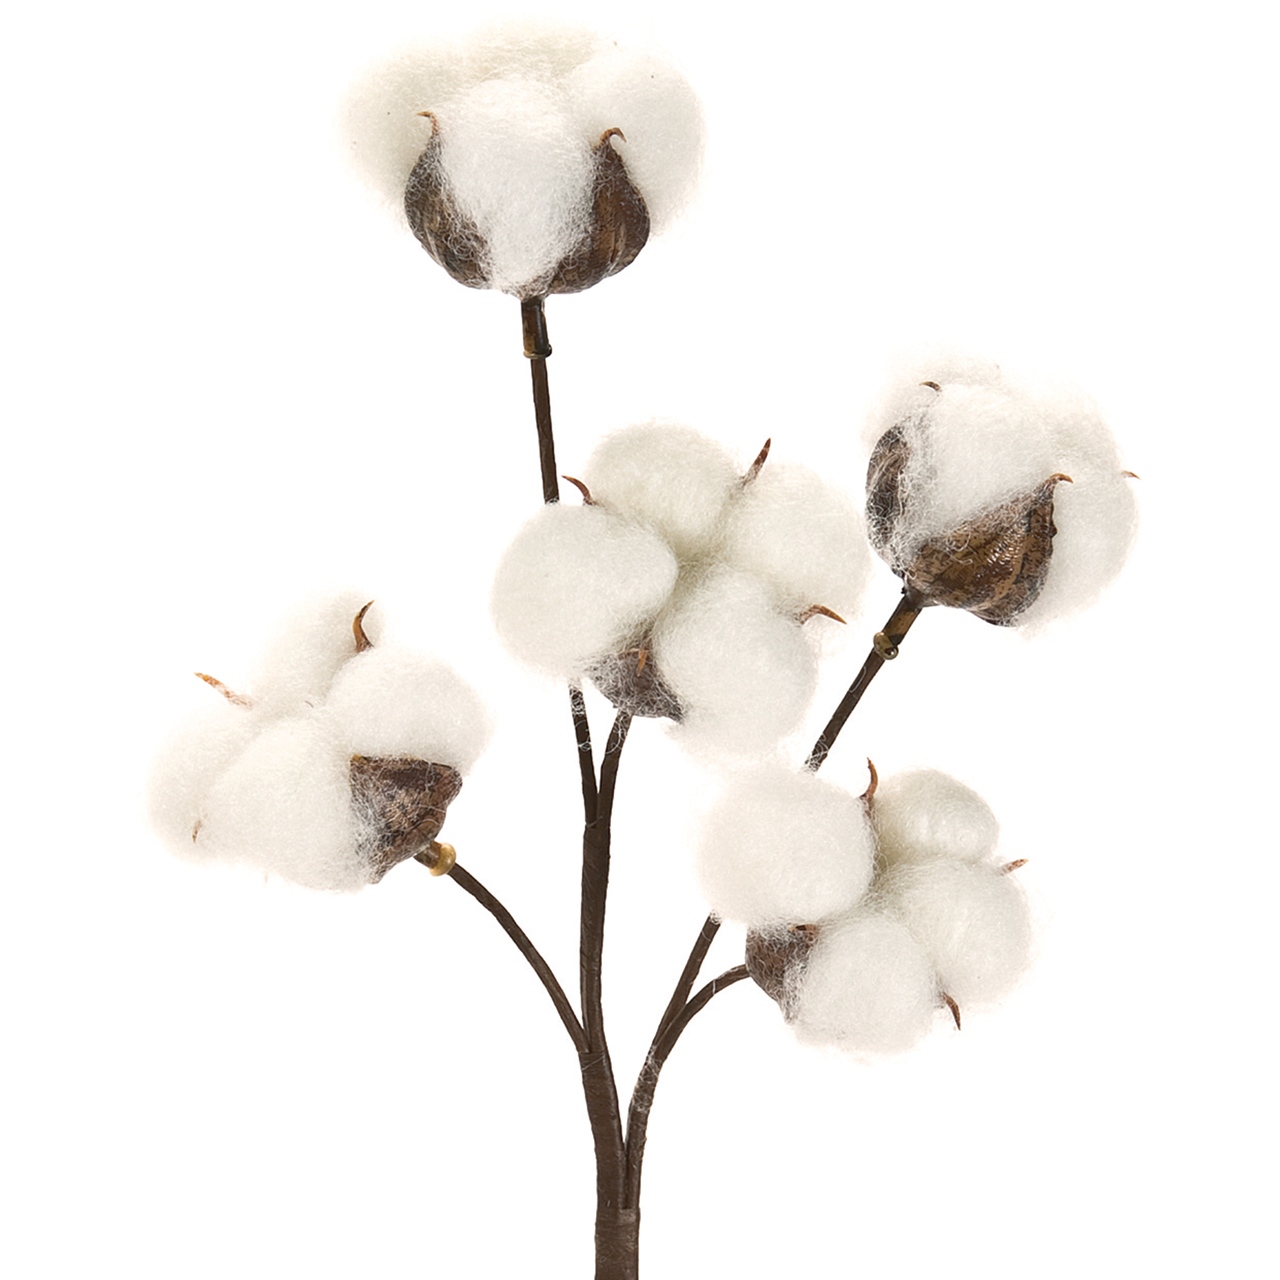 マイフラ 通販 Magiq コットンスプレー ホワイト アーティフィシャルフラワー 造花 クリスマス Fm0018 実もの 長さ 約36 幅 約16cm ホワイト Magiq アーティフィシャルフラワー 造花 全国にmagiq 花器 花資材などをお届けします